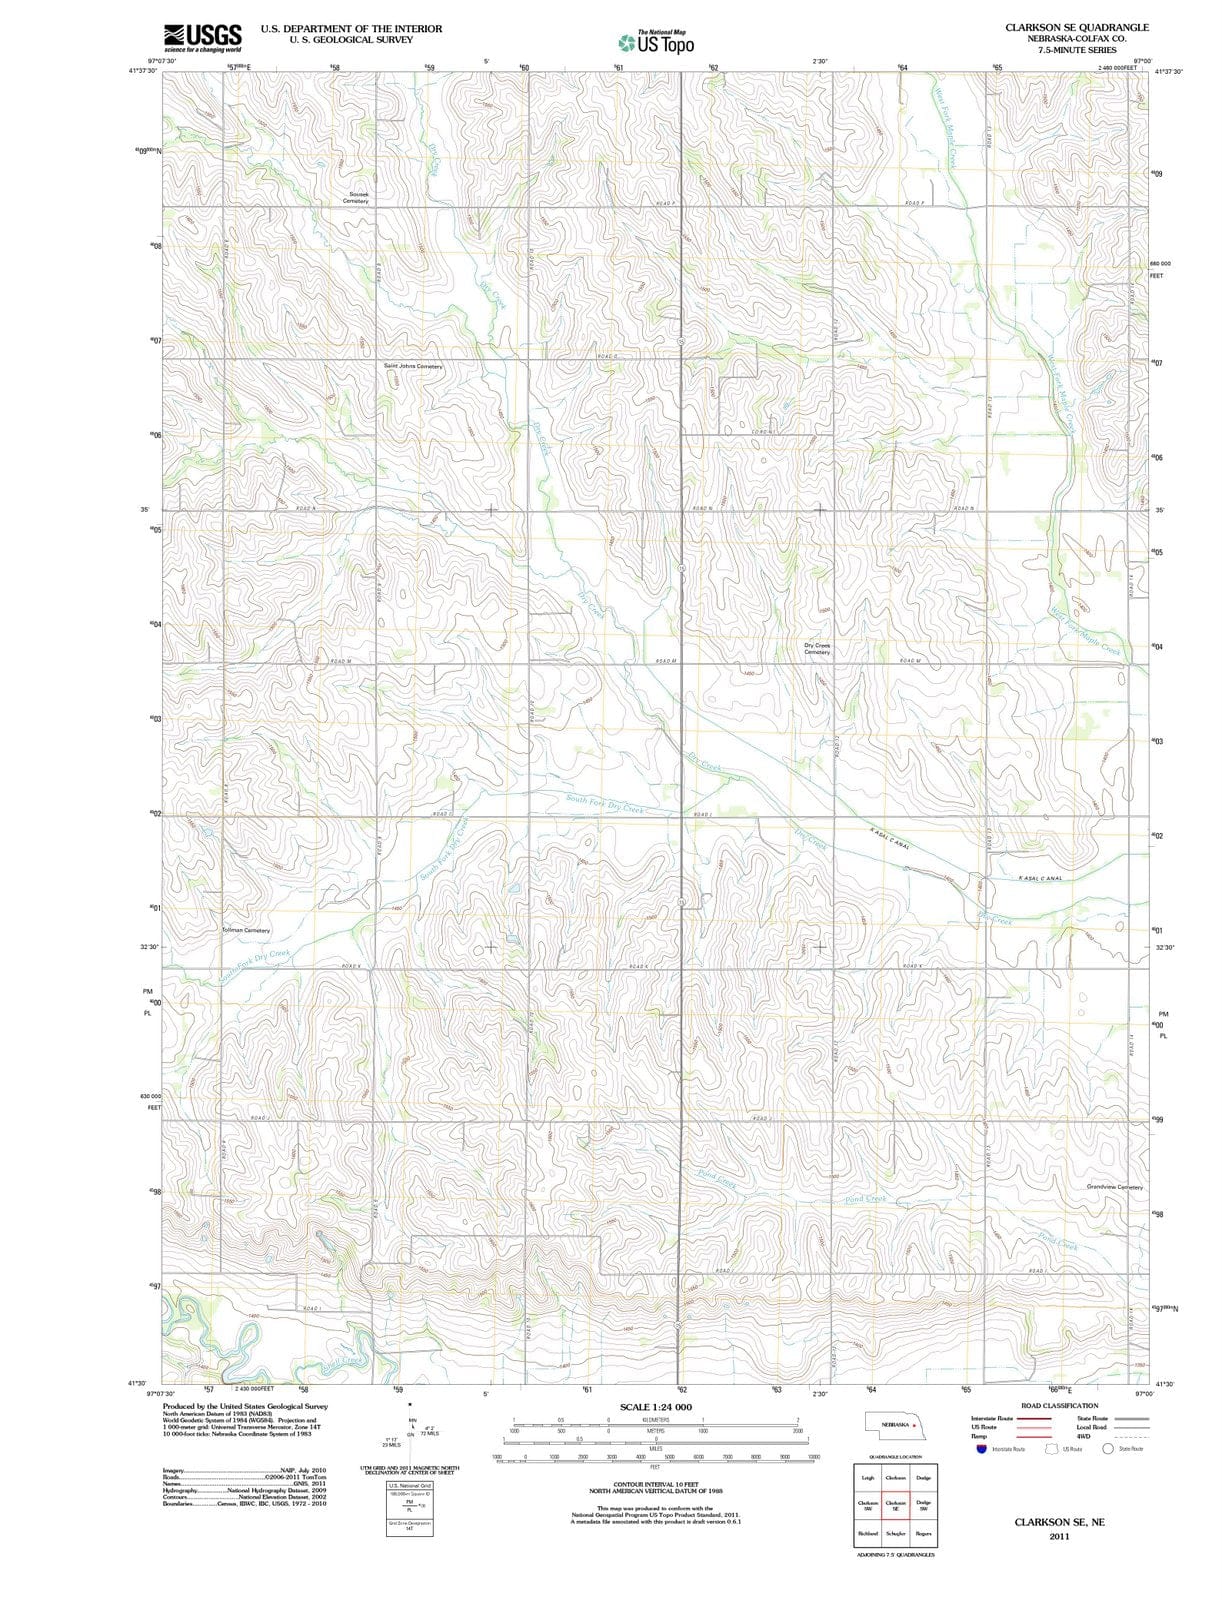 2011 Clarkson, NE - Nebraska - USGS Topographic Map v3